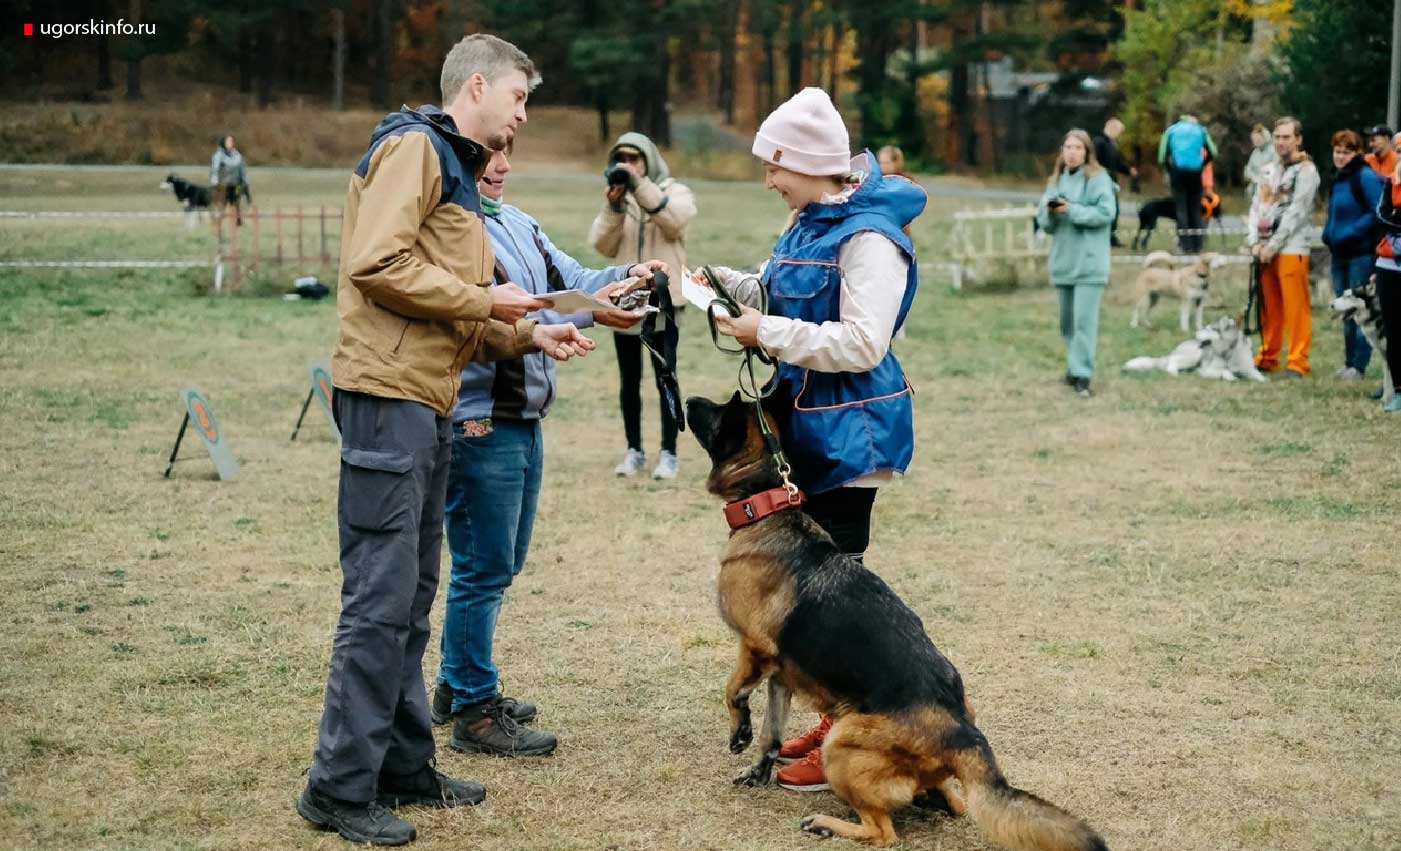 На фото Мария Белоконь со своей немецкой овчаркой по кличке Кира получают награду за успешно пройденные соревнования по каникроссу.